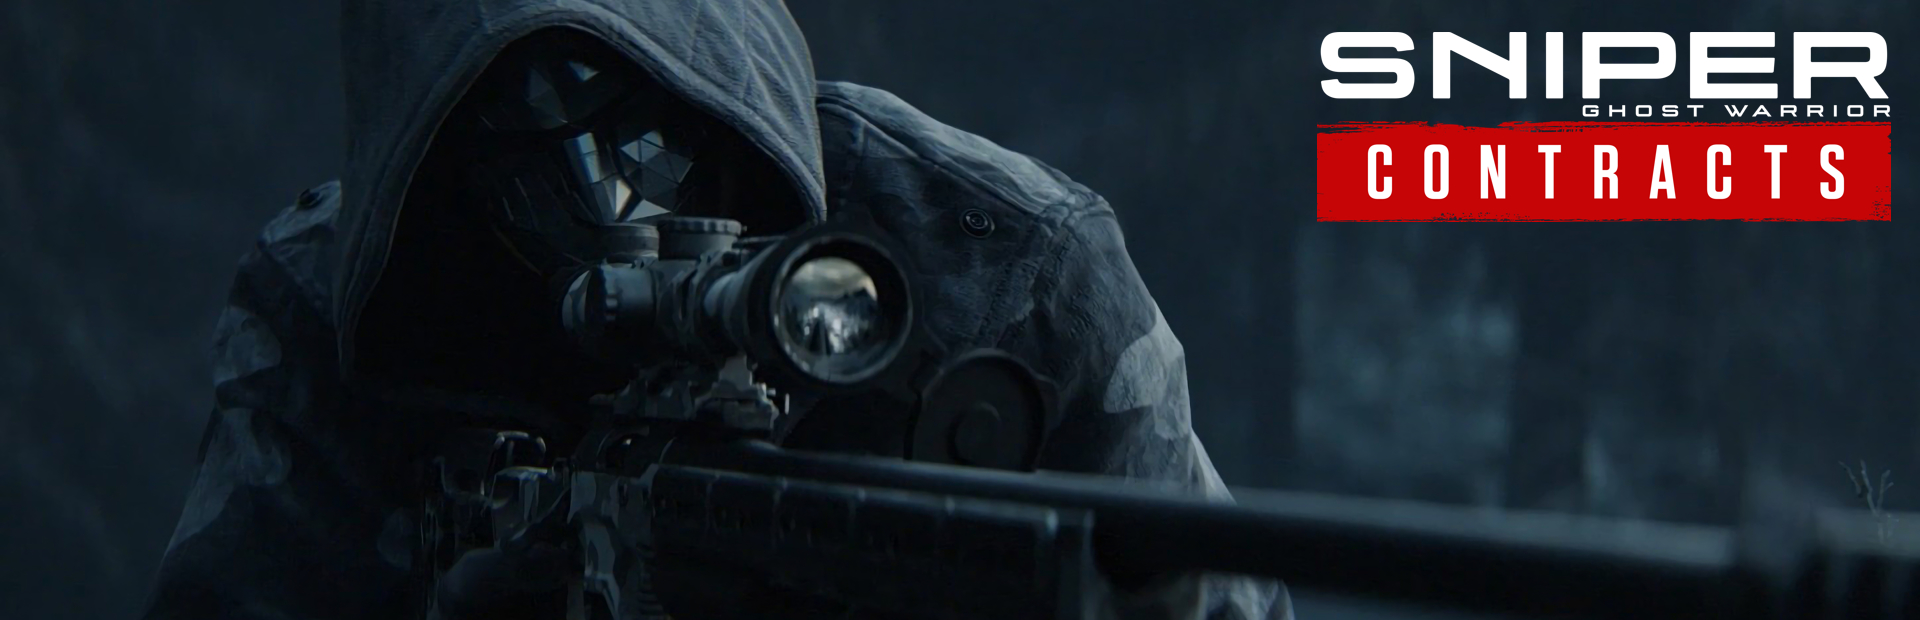 دانلود بازی Sniper Ghost Warrior Contracts برای پی سی | گیمباتو